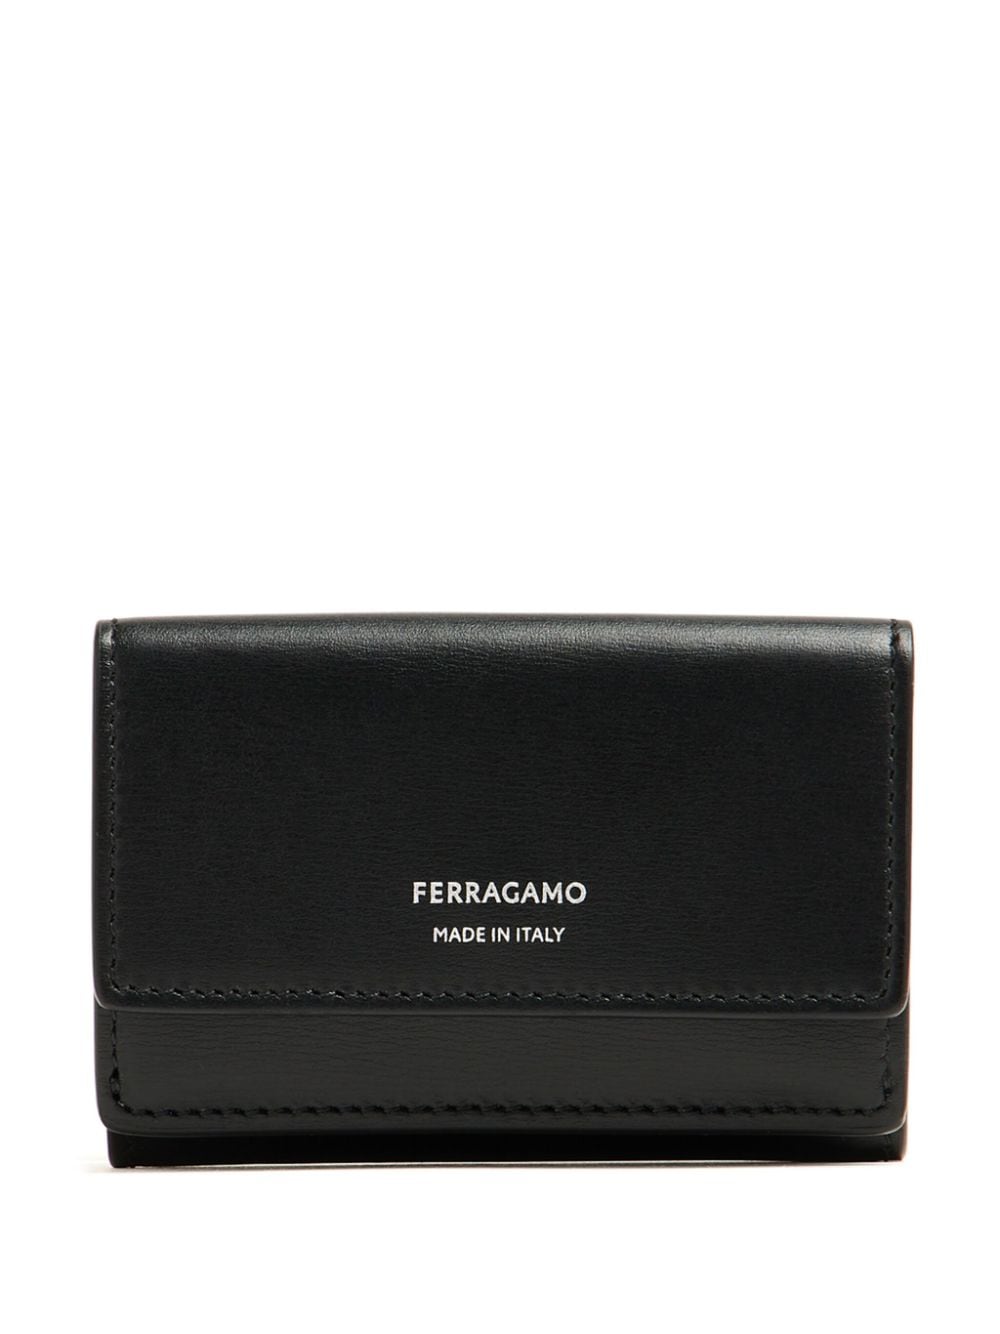 Ferragamo Classic leather tri-fold wallet - Black von Ferragamo